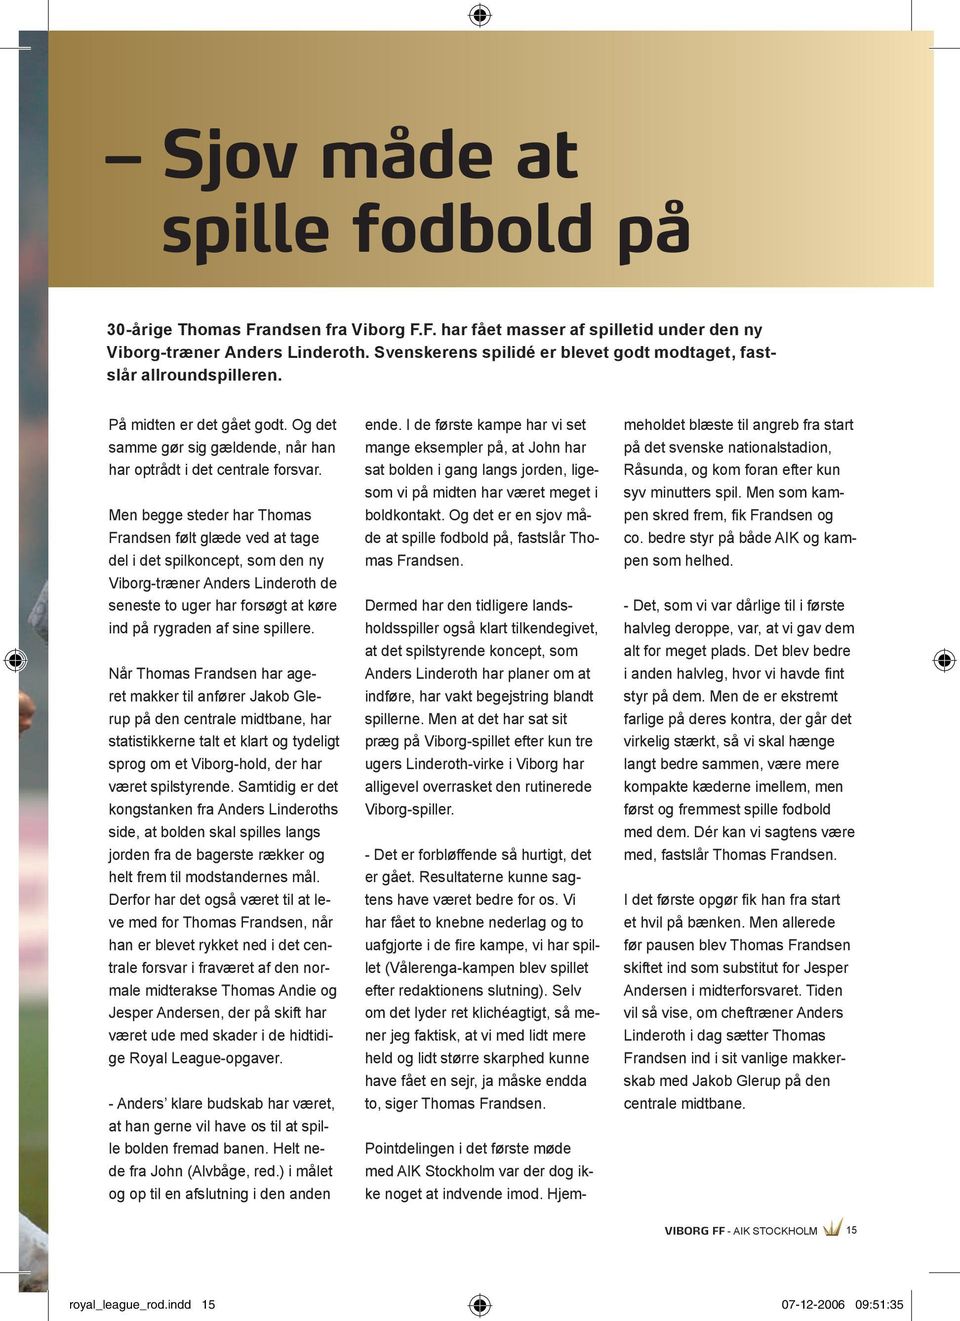 Men begge steder har Thomas Frandsen følt glæde ved at tage del i det spilkoncept, som den ny Viborg-træner Anders Linderoth de seneste to uger har forsøgt at køre ind på rygraden af sine spillere.